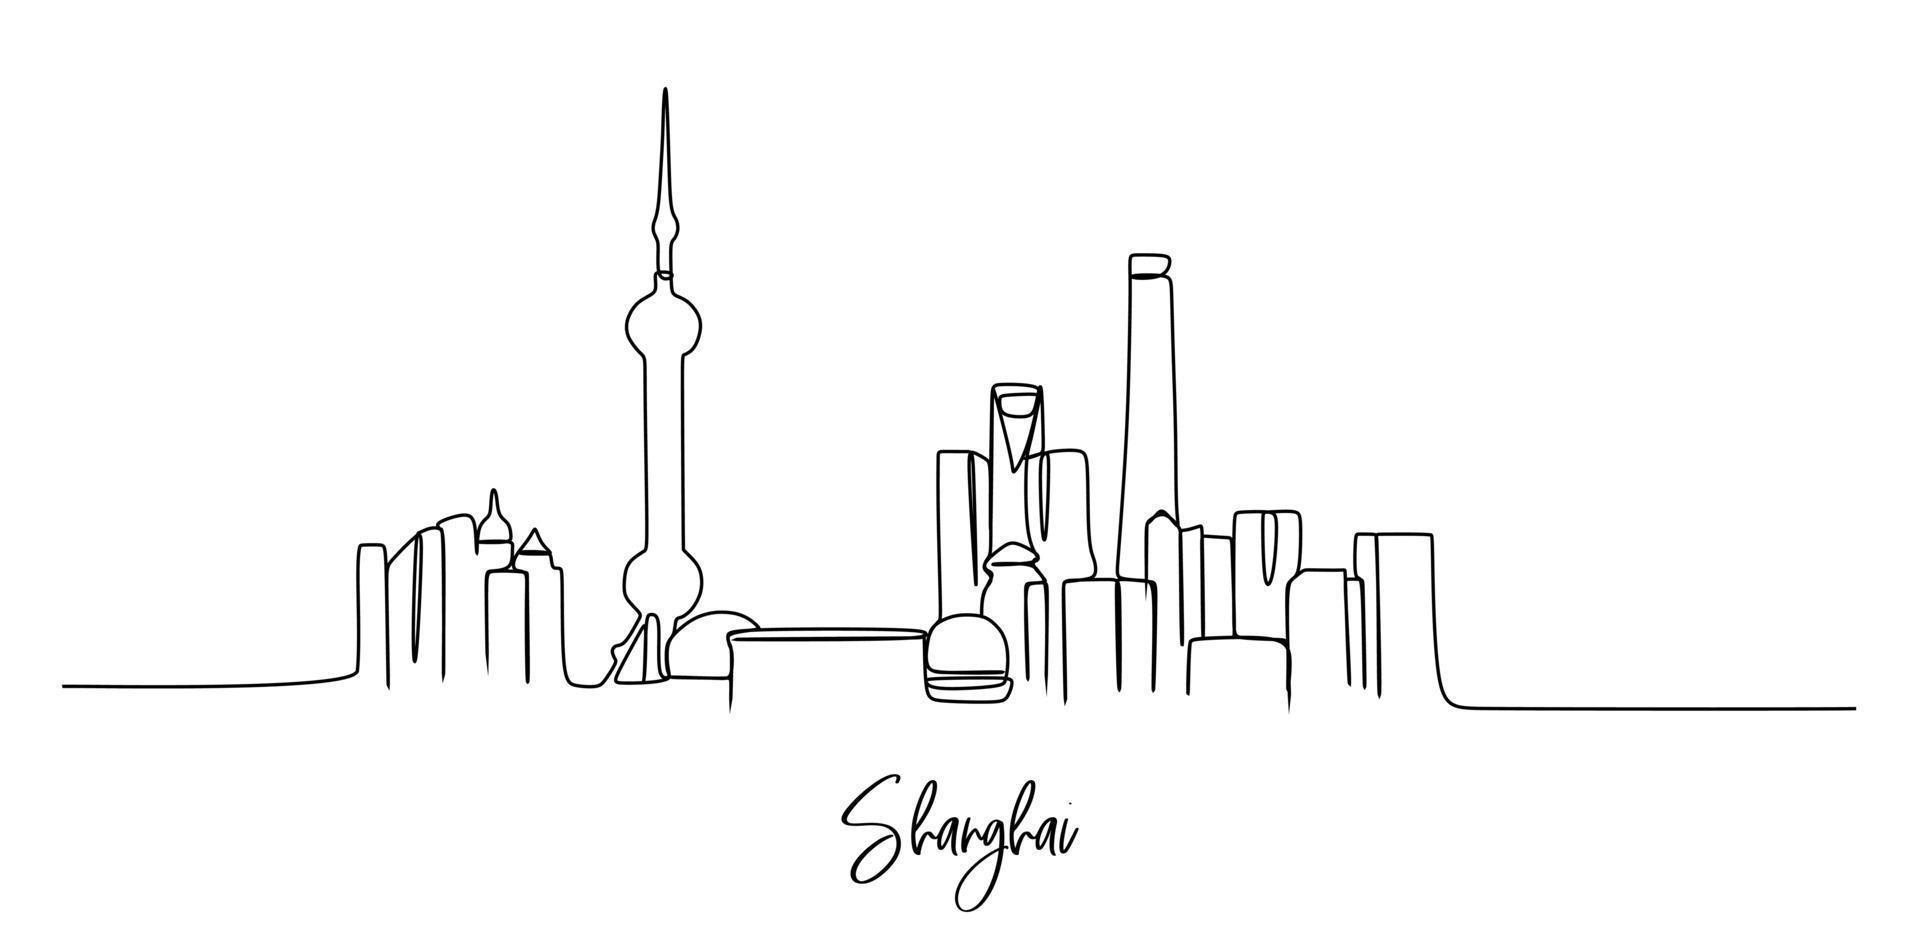 één enkele lijntekening van de stadshorizon van Shanghai, China. historisch stadslandschap in de wereld. beste vakantiebestemming. bewerkbare lijn trendy doorlopende lijn tekenen ontwerp vector grafische afbeelding